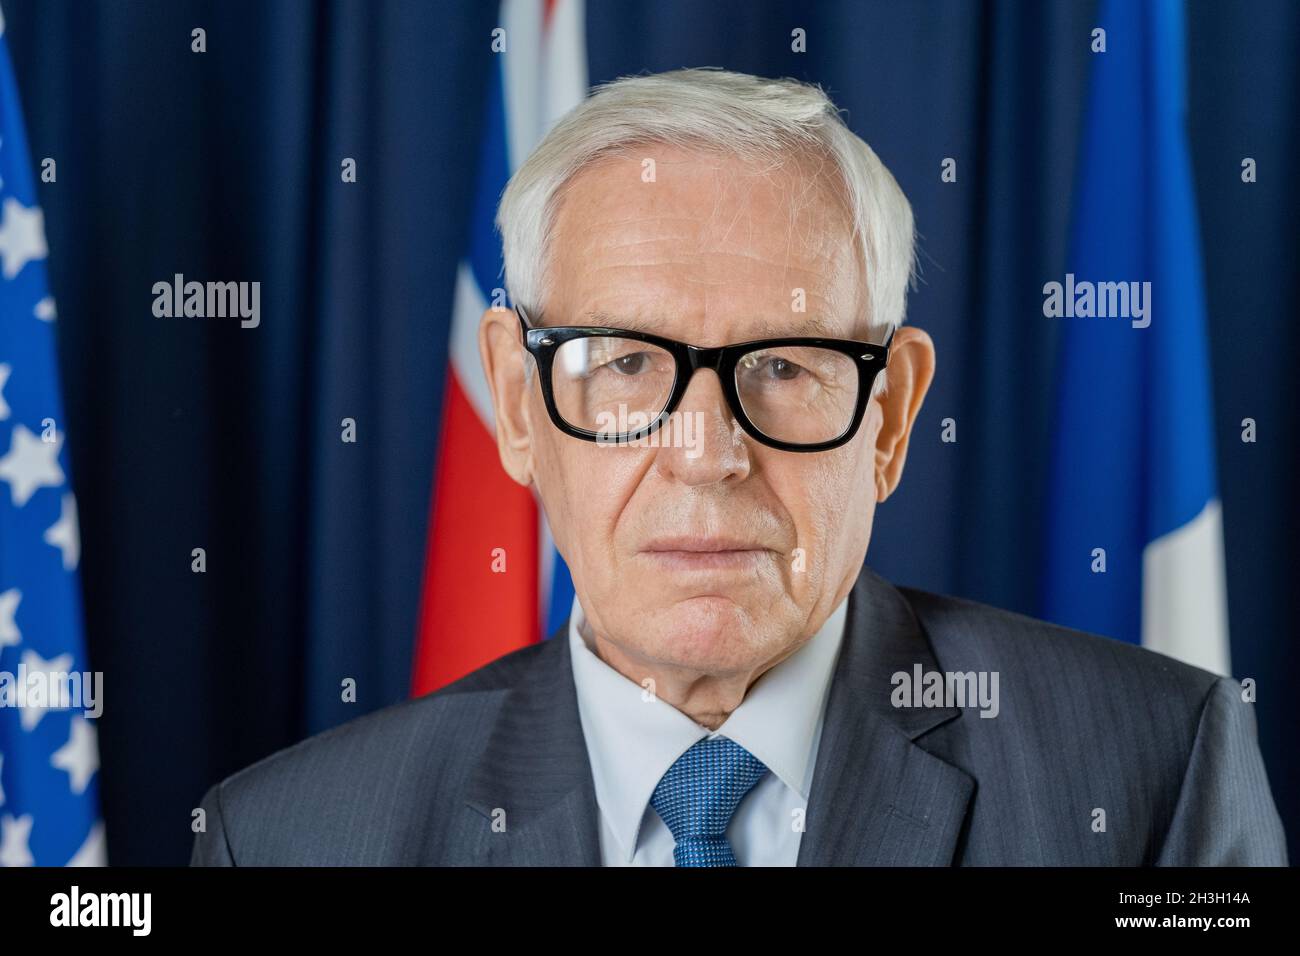 Portrait d'un homme politique sérieux et confiant en lunettes debout contre des drapeaux et des rideaux bleu foncé Banque D'Images